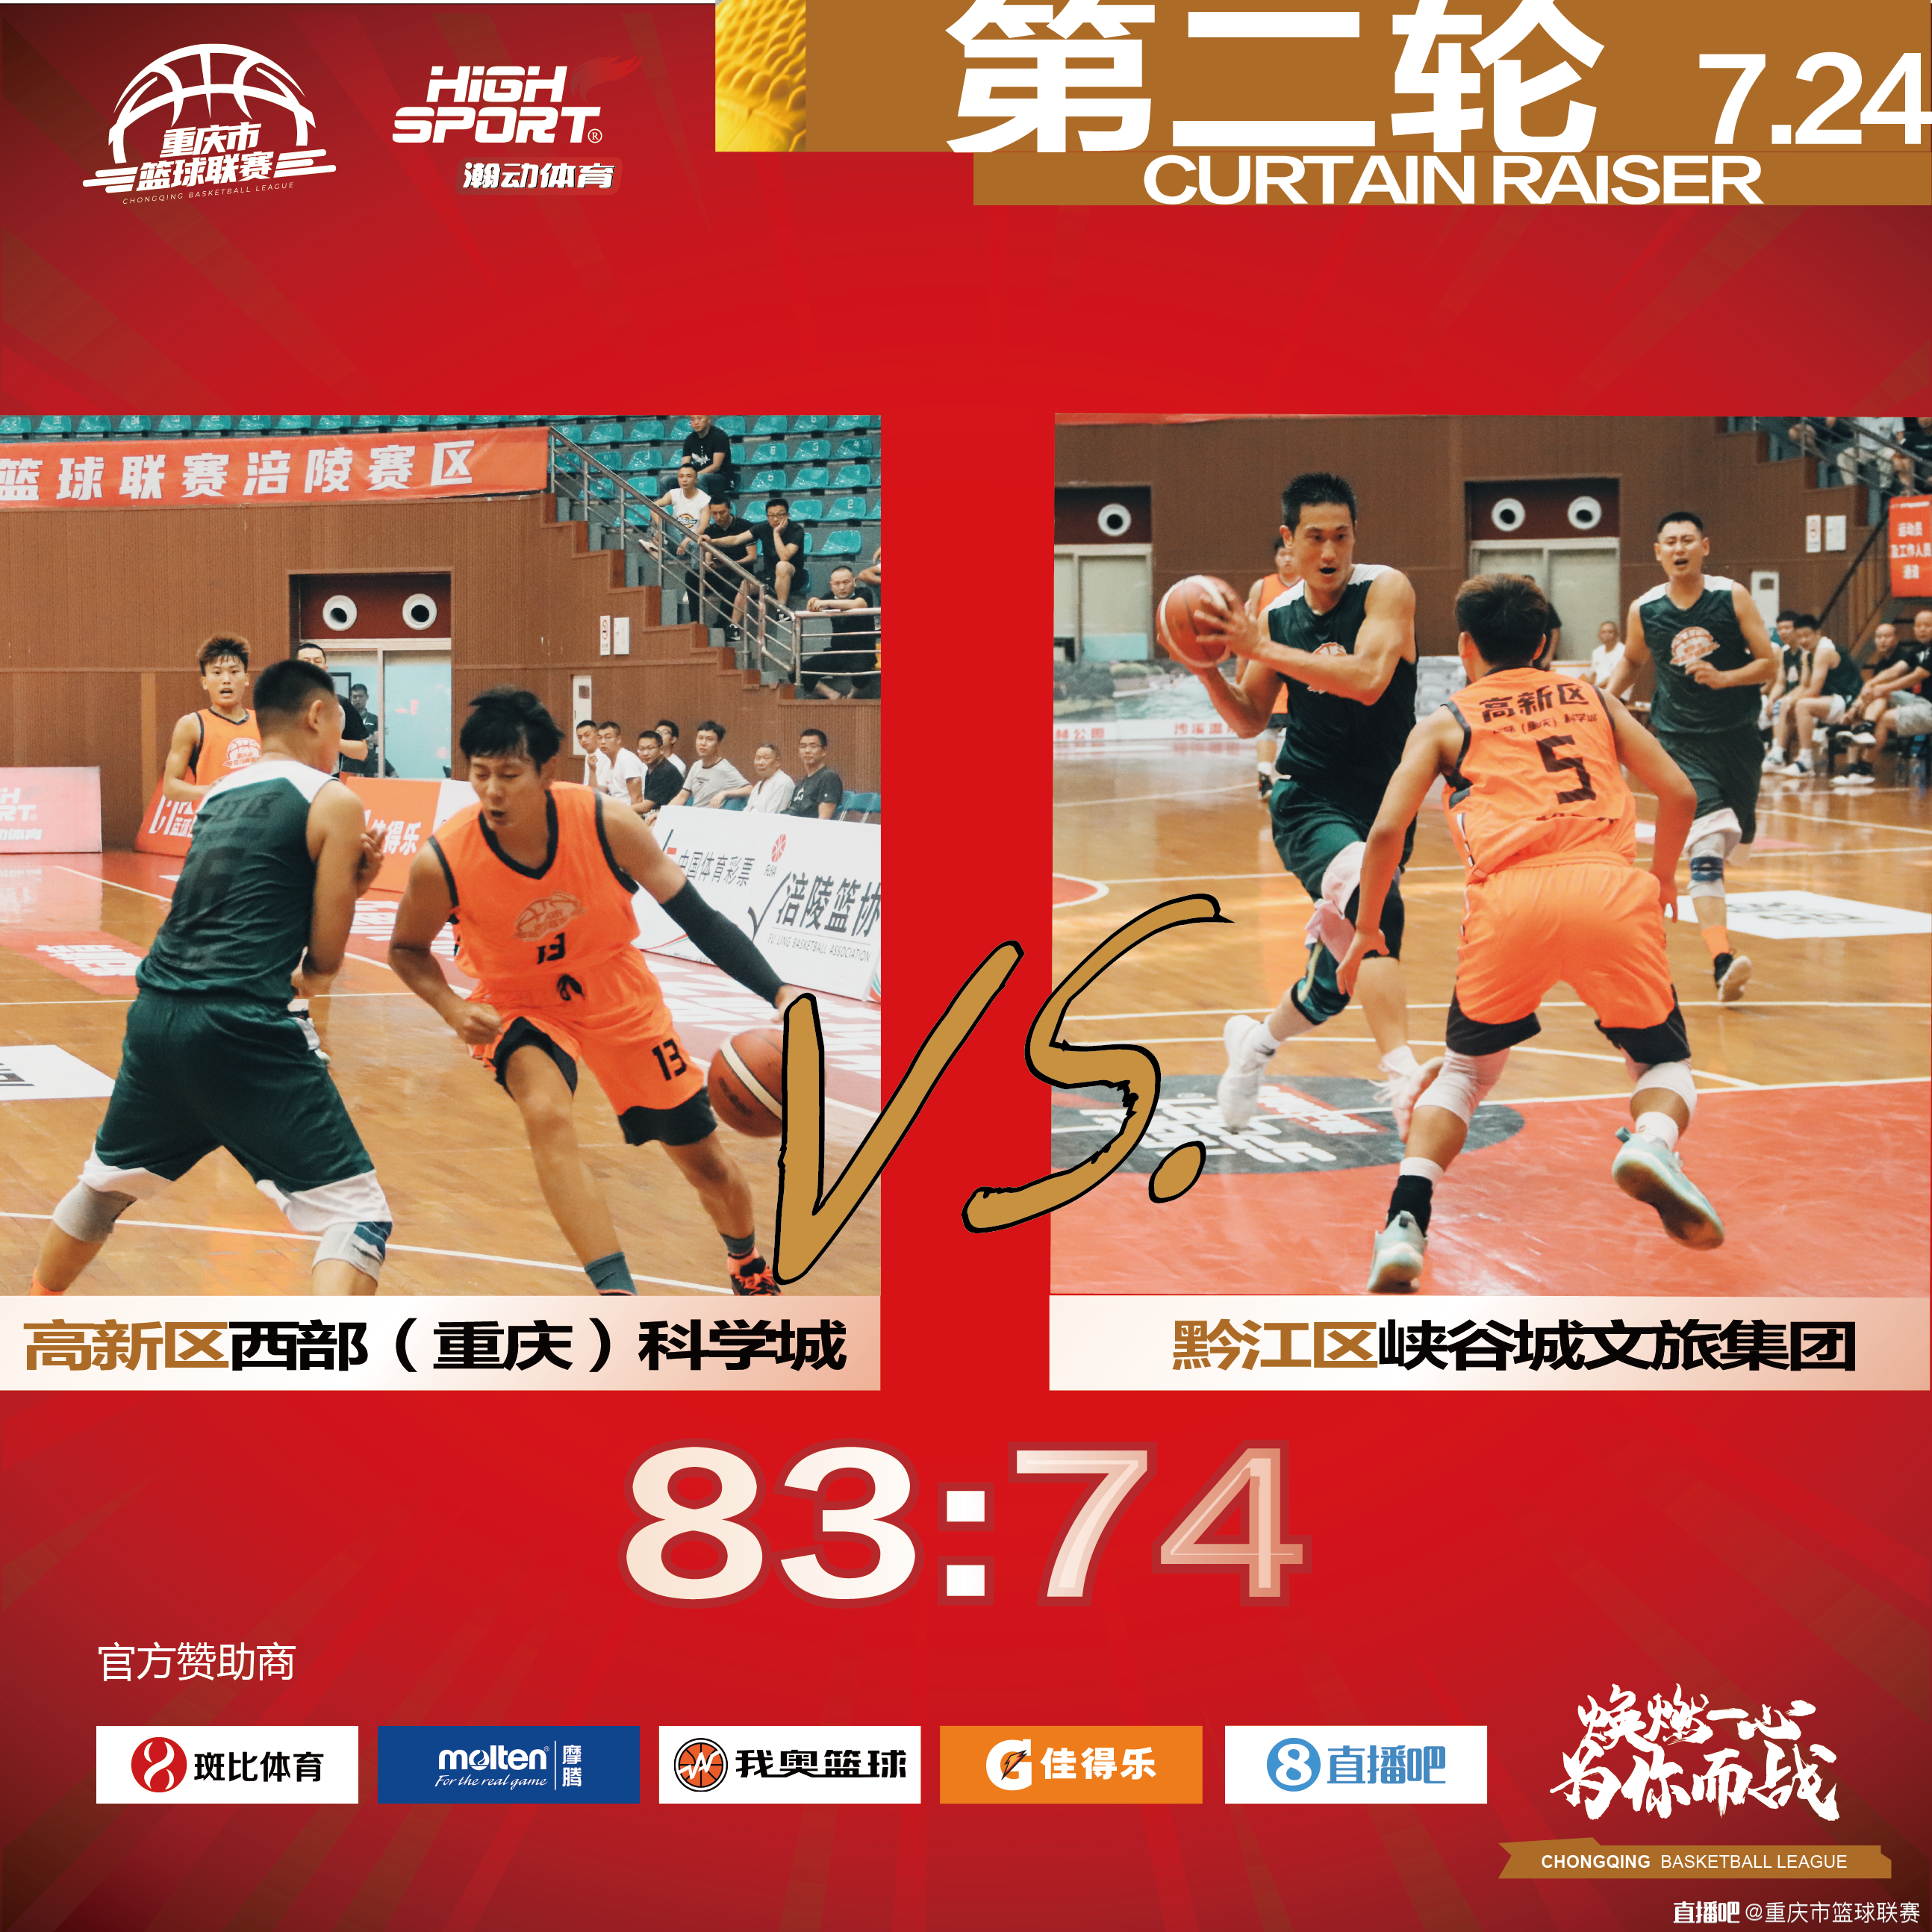 重庆篮球联赛涪陵赛区第二轮:合川13分大逆转 王振爆砍40